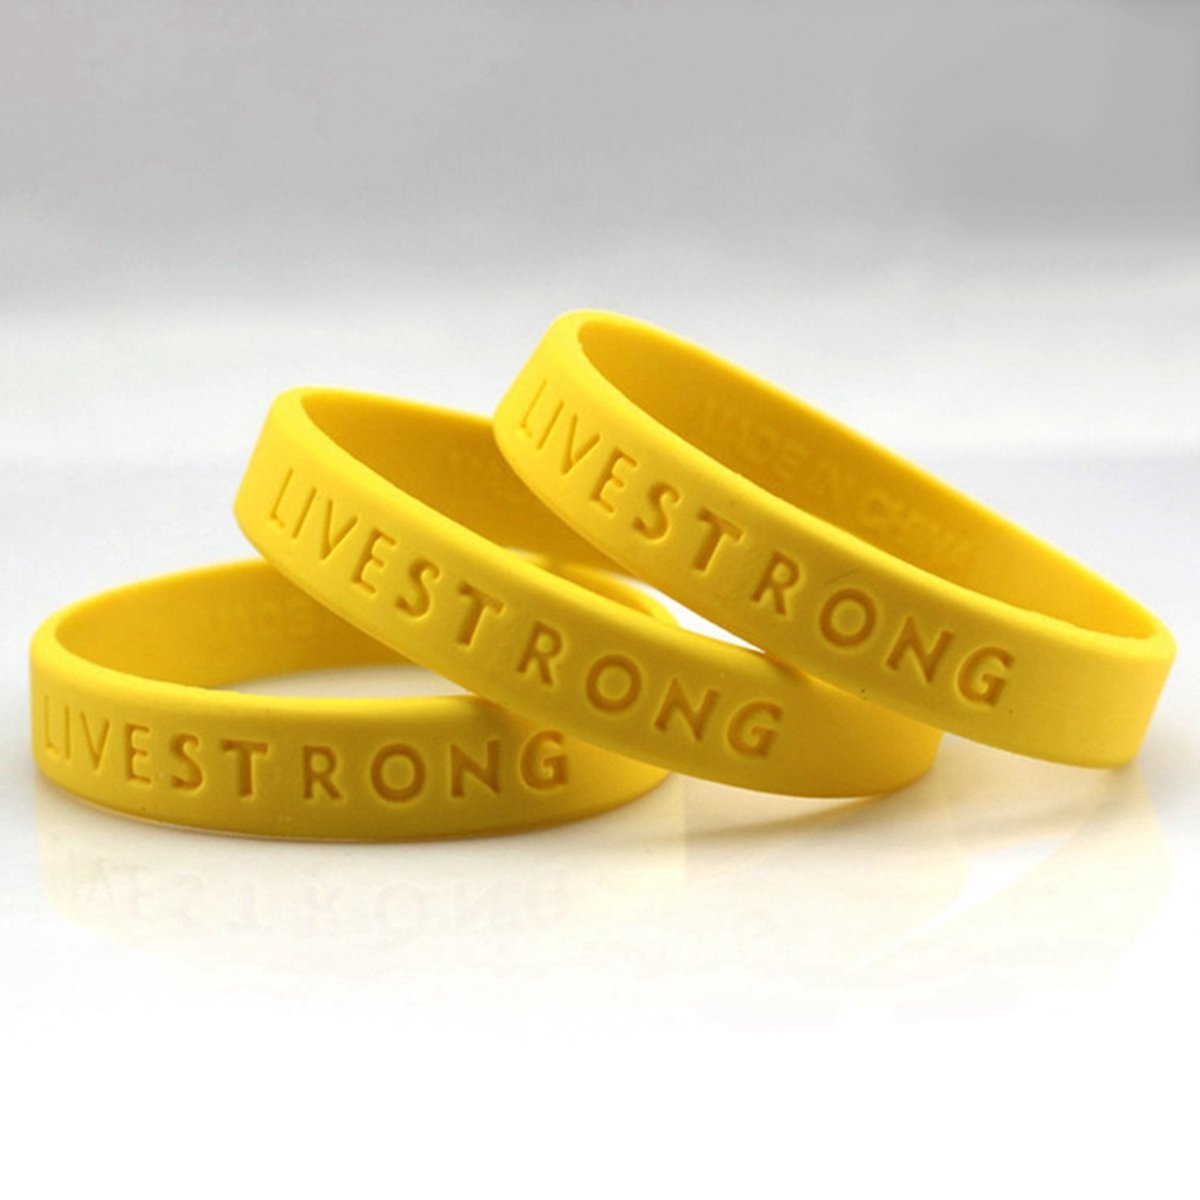 Live strong armband - siliconen armband - gele armband - evenementenarmband  | bol